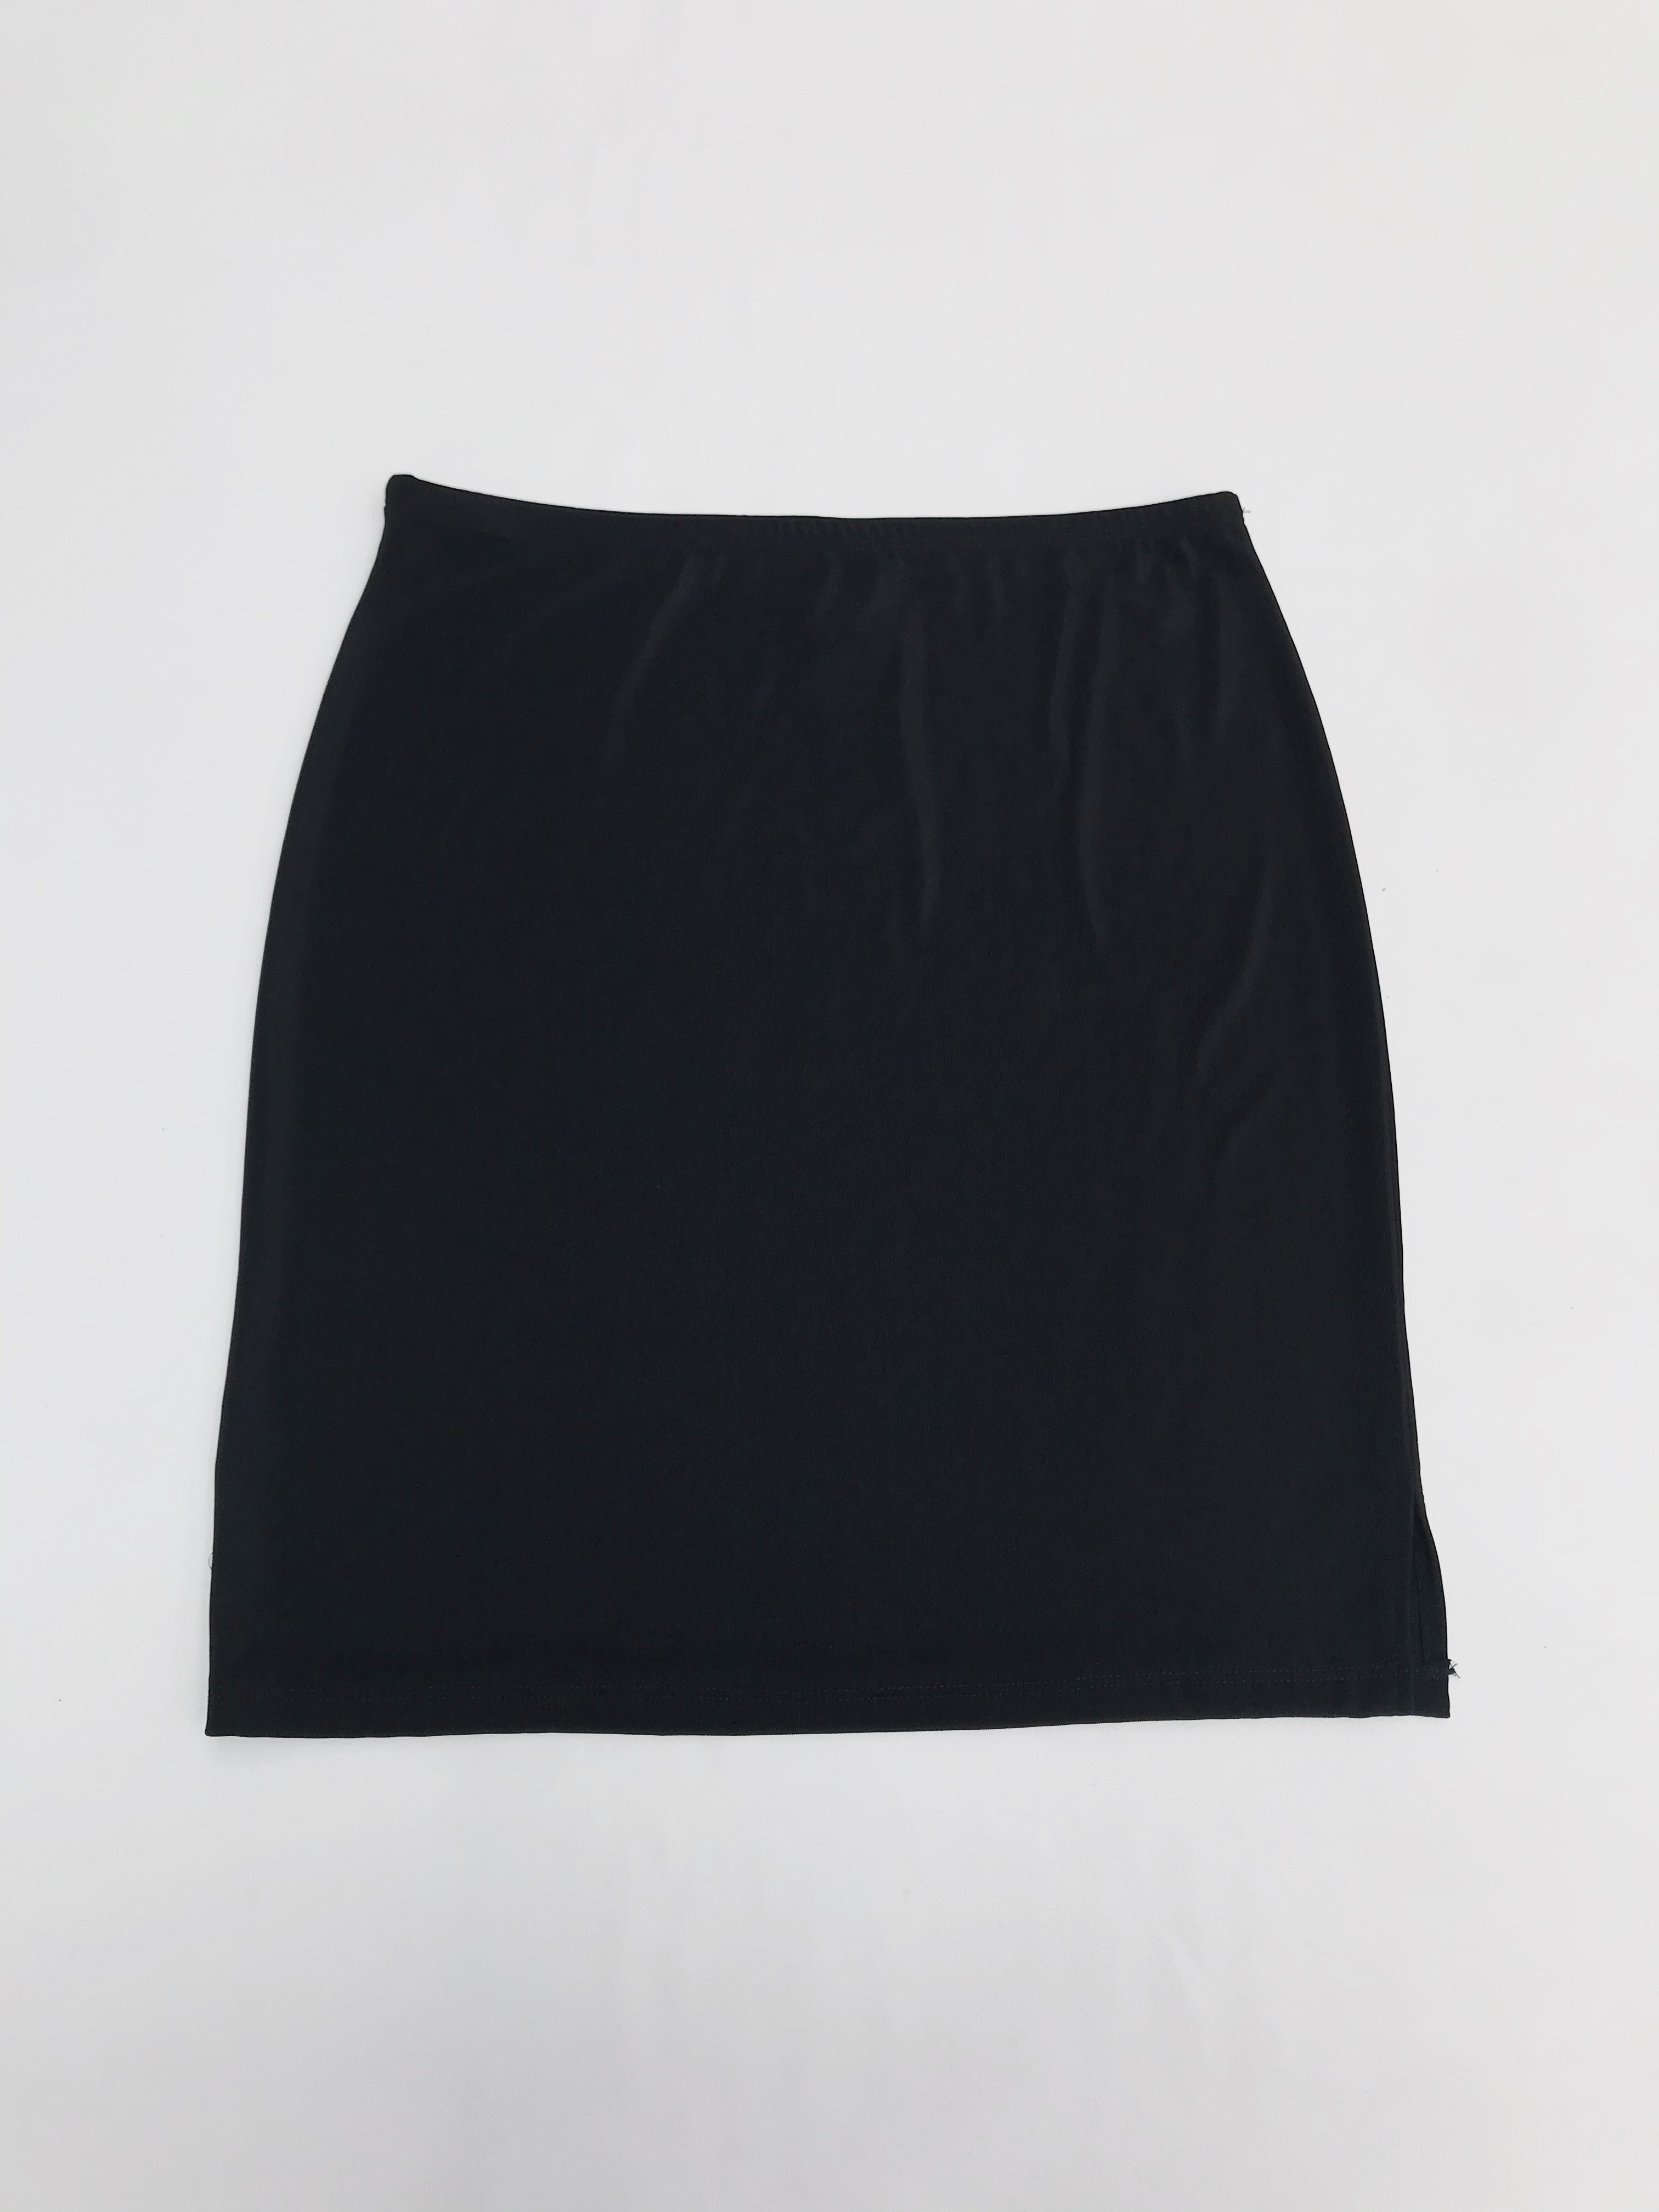 Falda negra stretch con textura de hilo. Largo 48cm, Talla S/M